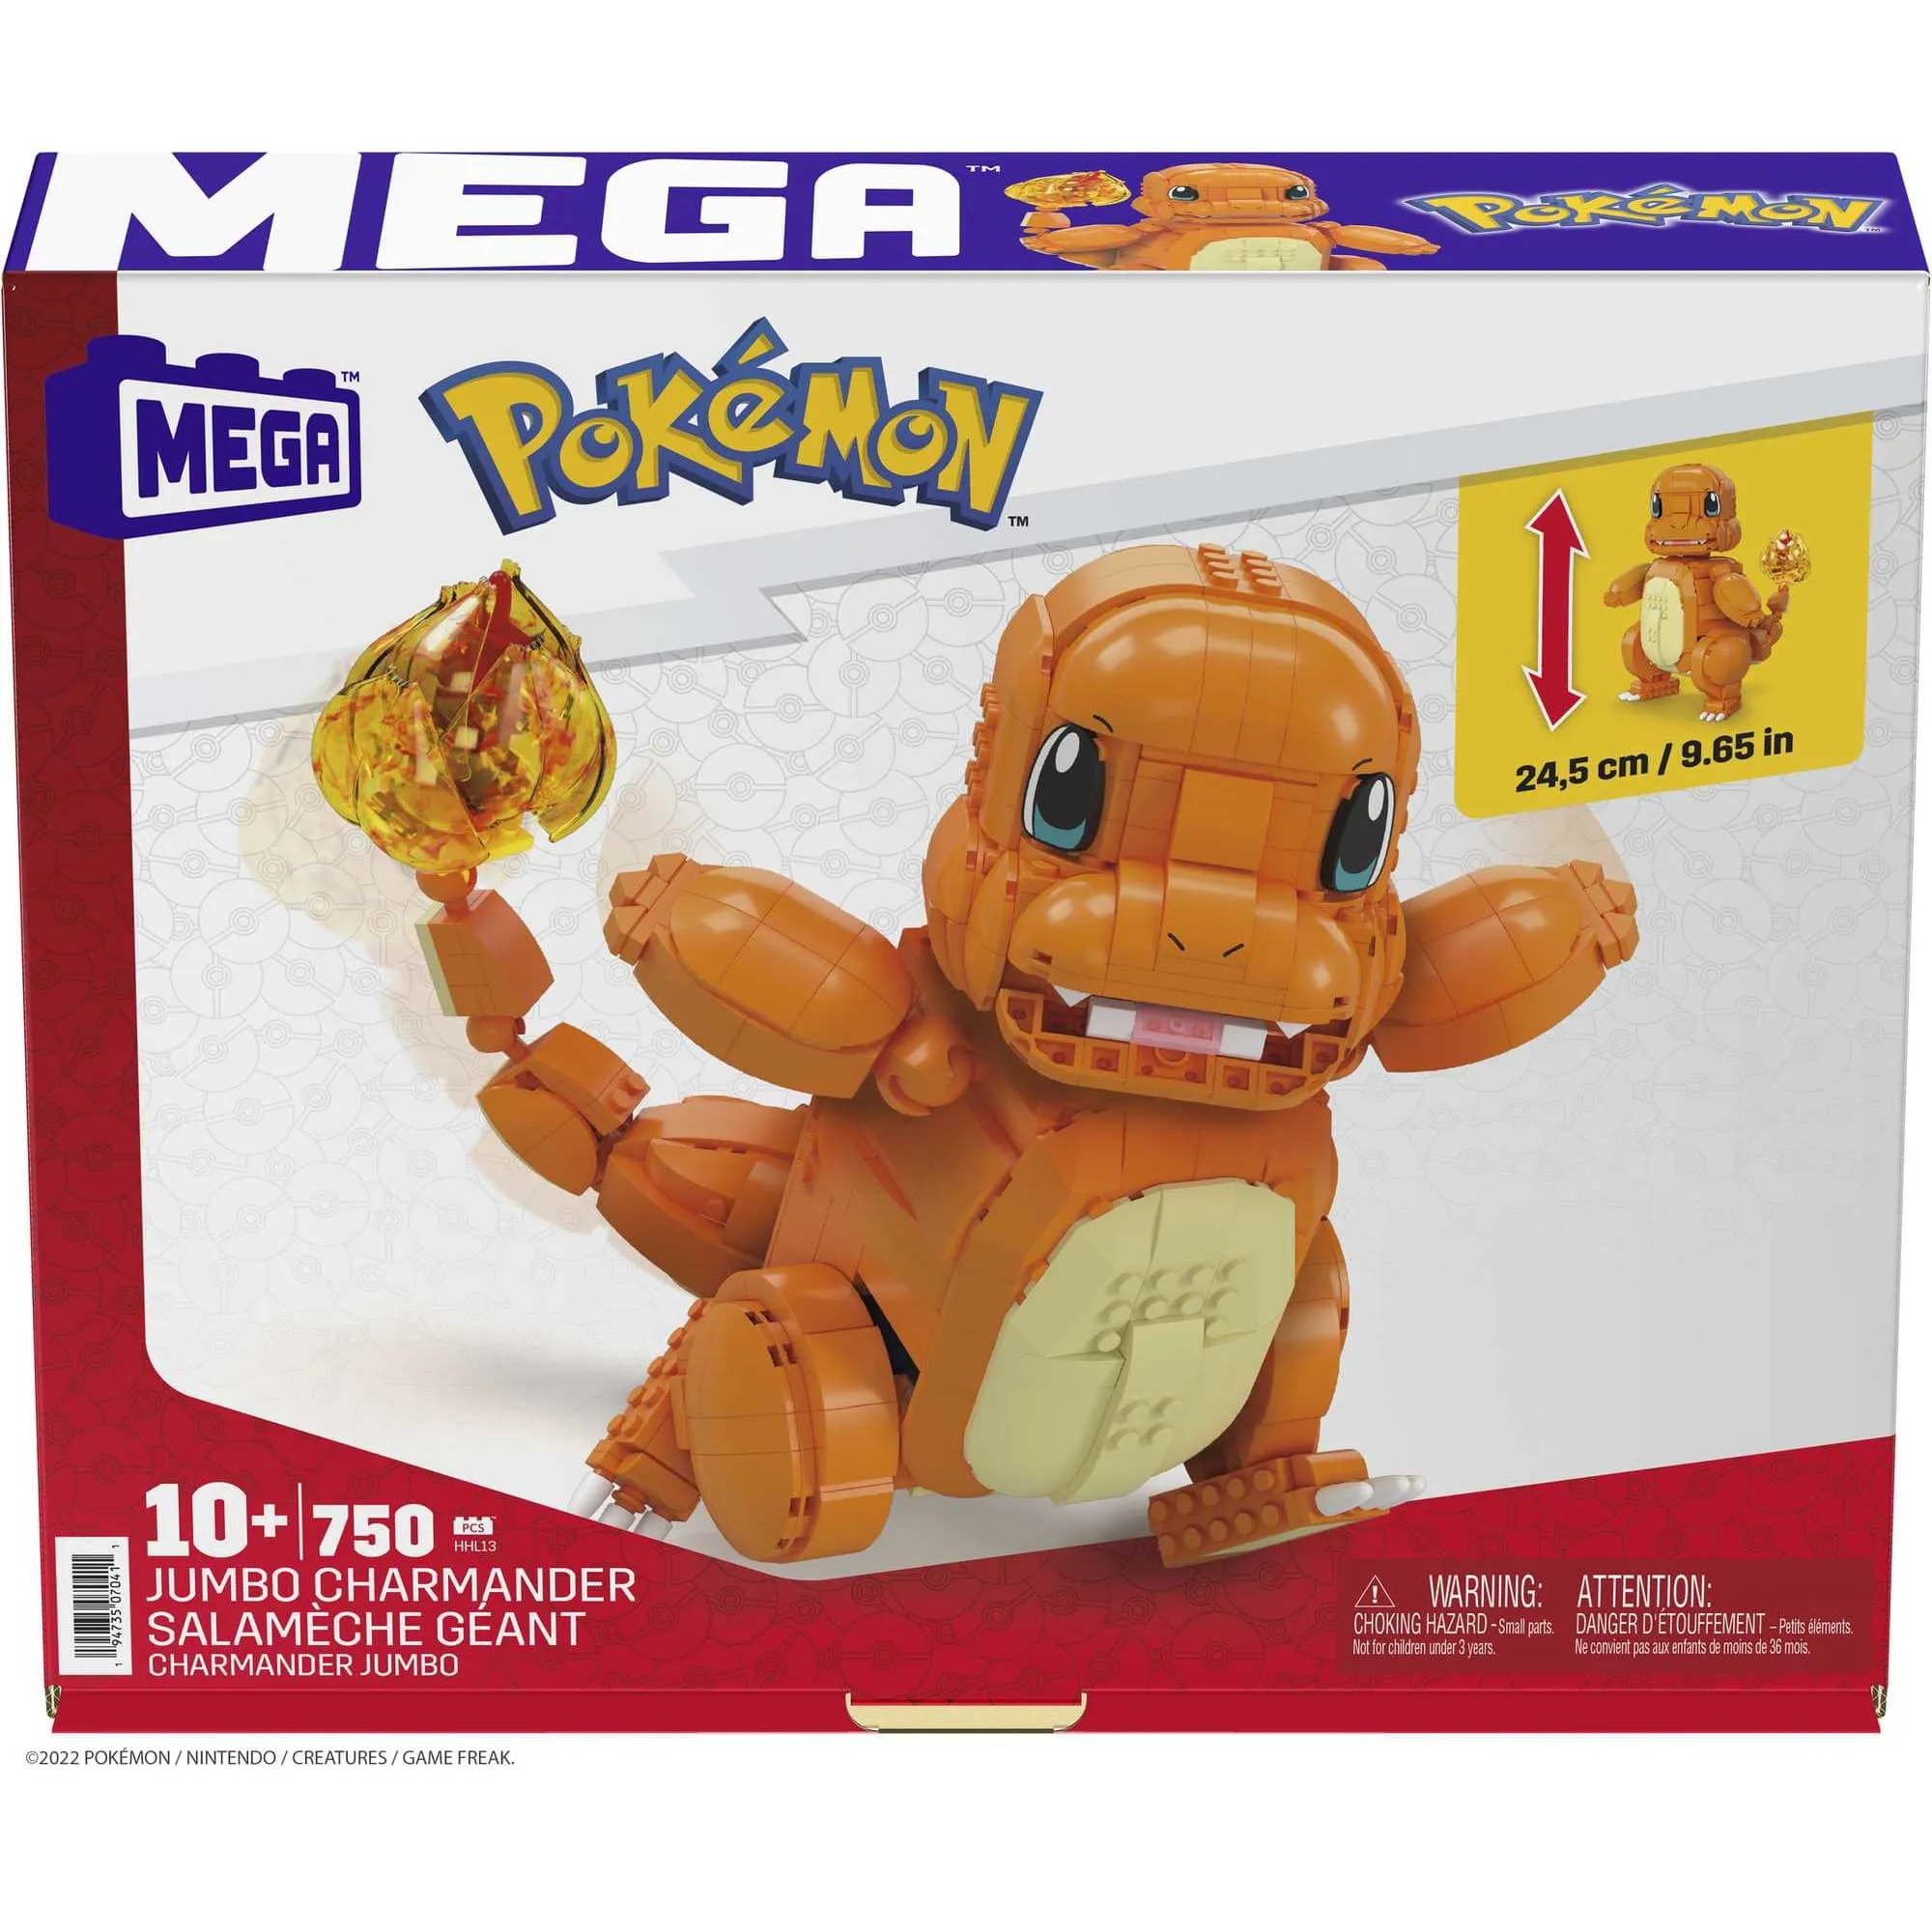 MEGA Construx Pokémon Snorlax • Set HLB70 • SetDB